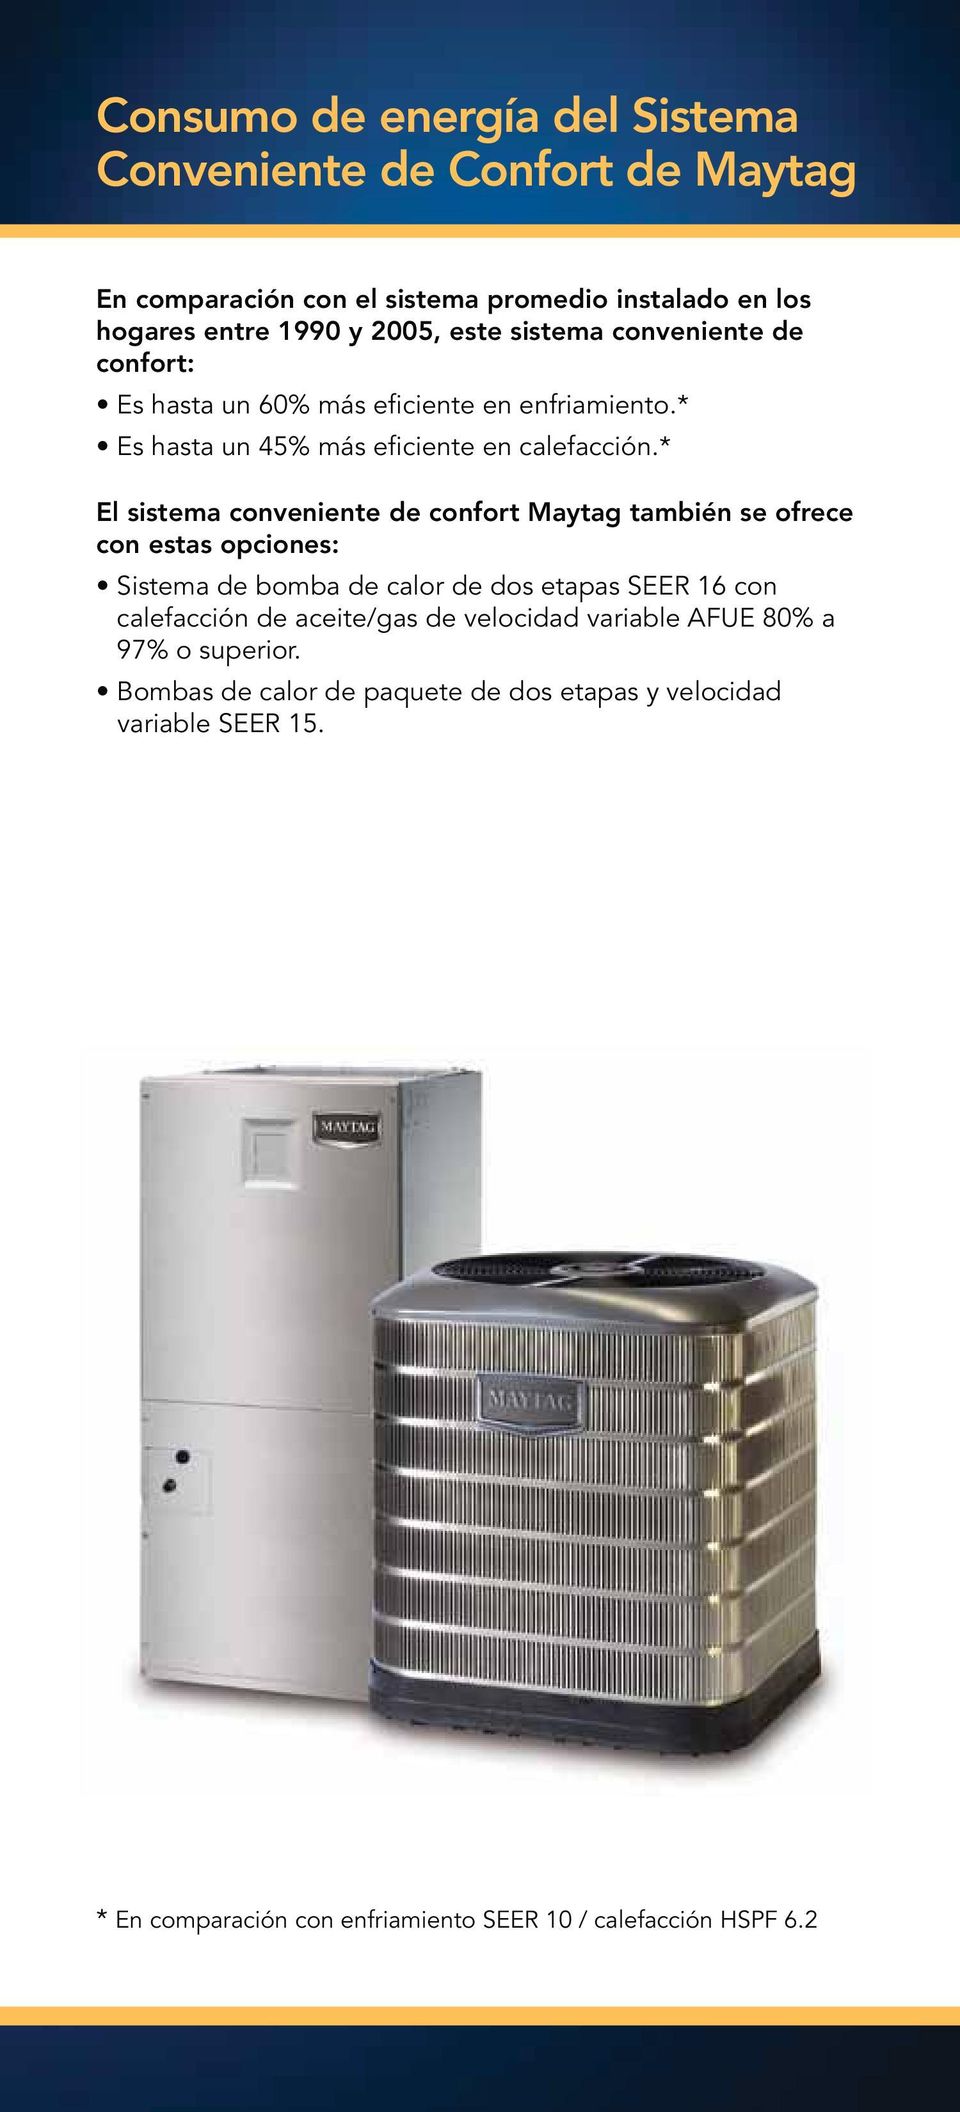 * El sistema conveniente de confort Maytag también se ofrece con estas opciones: Sistema de bomba de calor de dos etapas SEER 16 con calefacción de